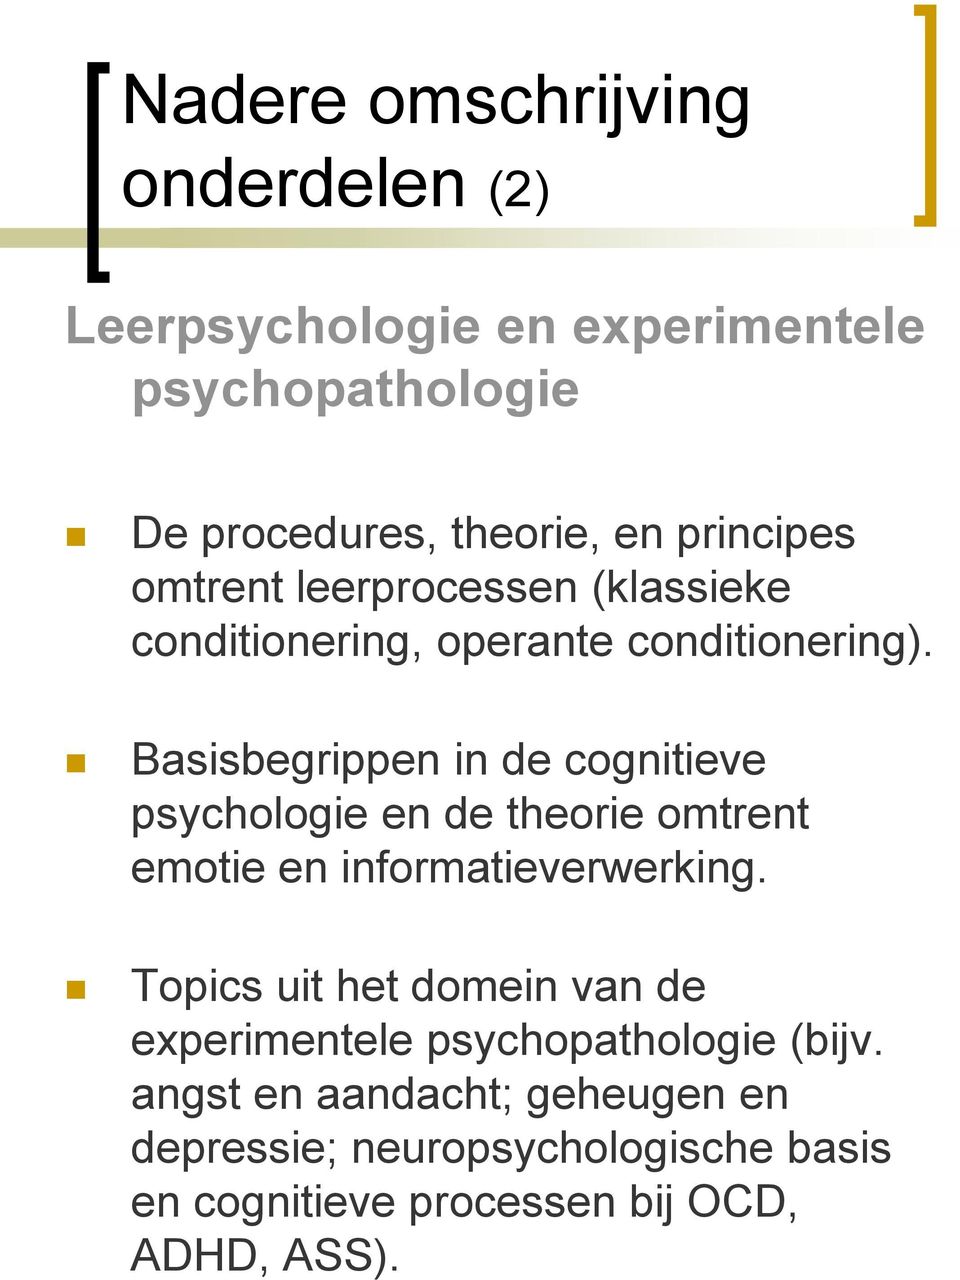 Basisbegrippen in de cognitieve psychologie en de theorie omtrent emotie en informatieverwerking.